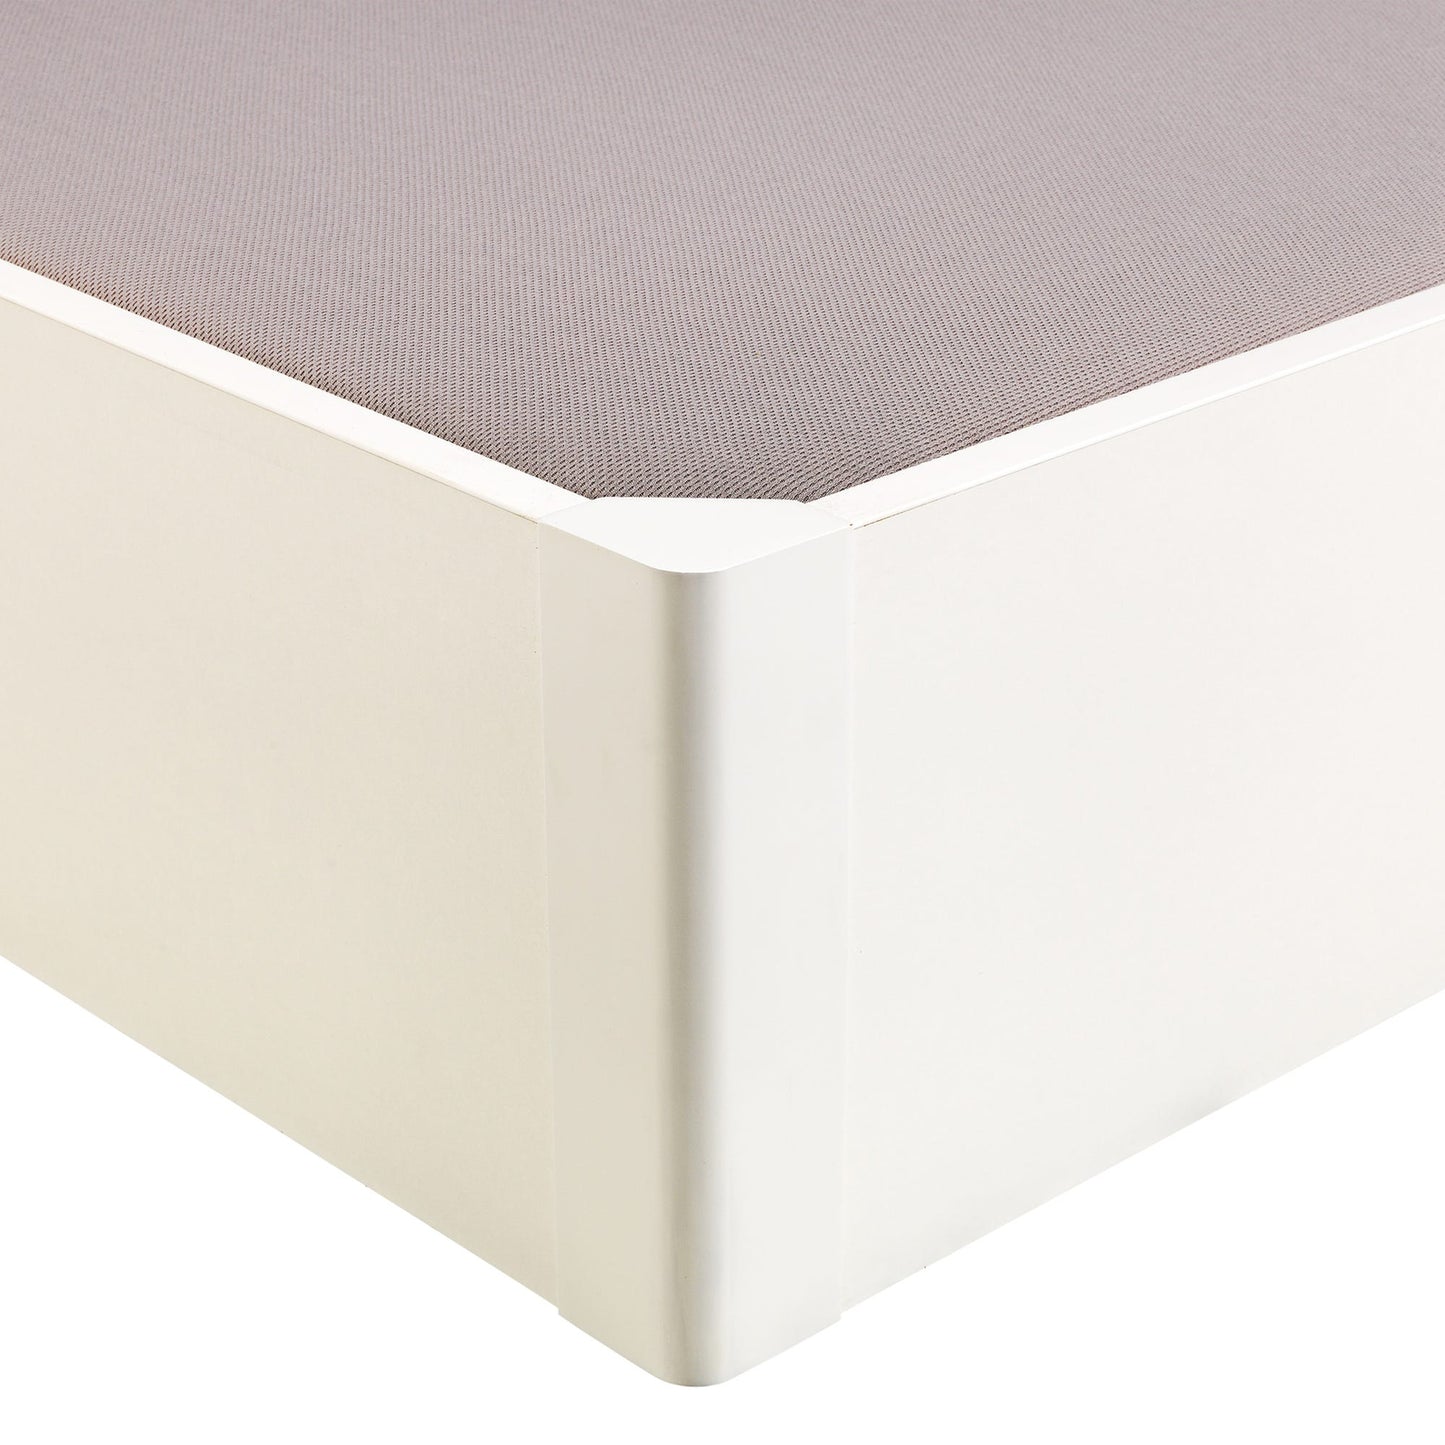 Canapé abatible de madera tapa única de color blanco - DESIGN - 90x220